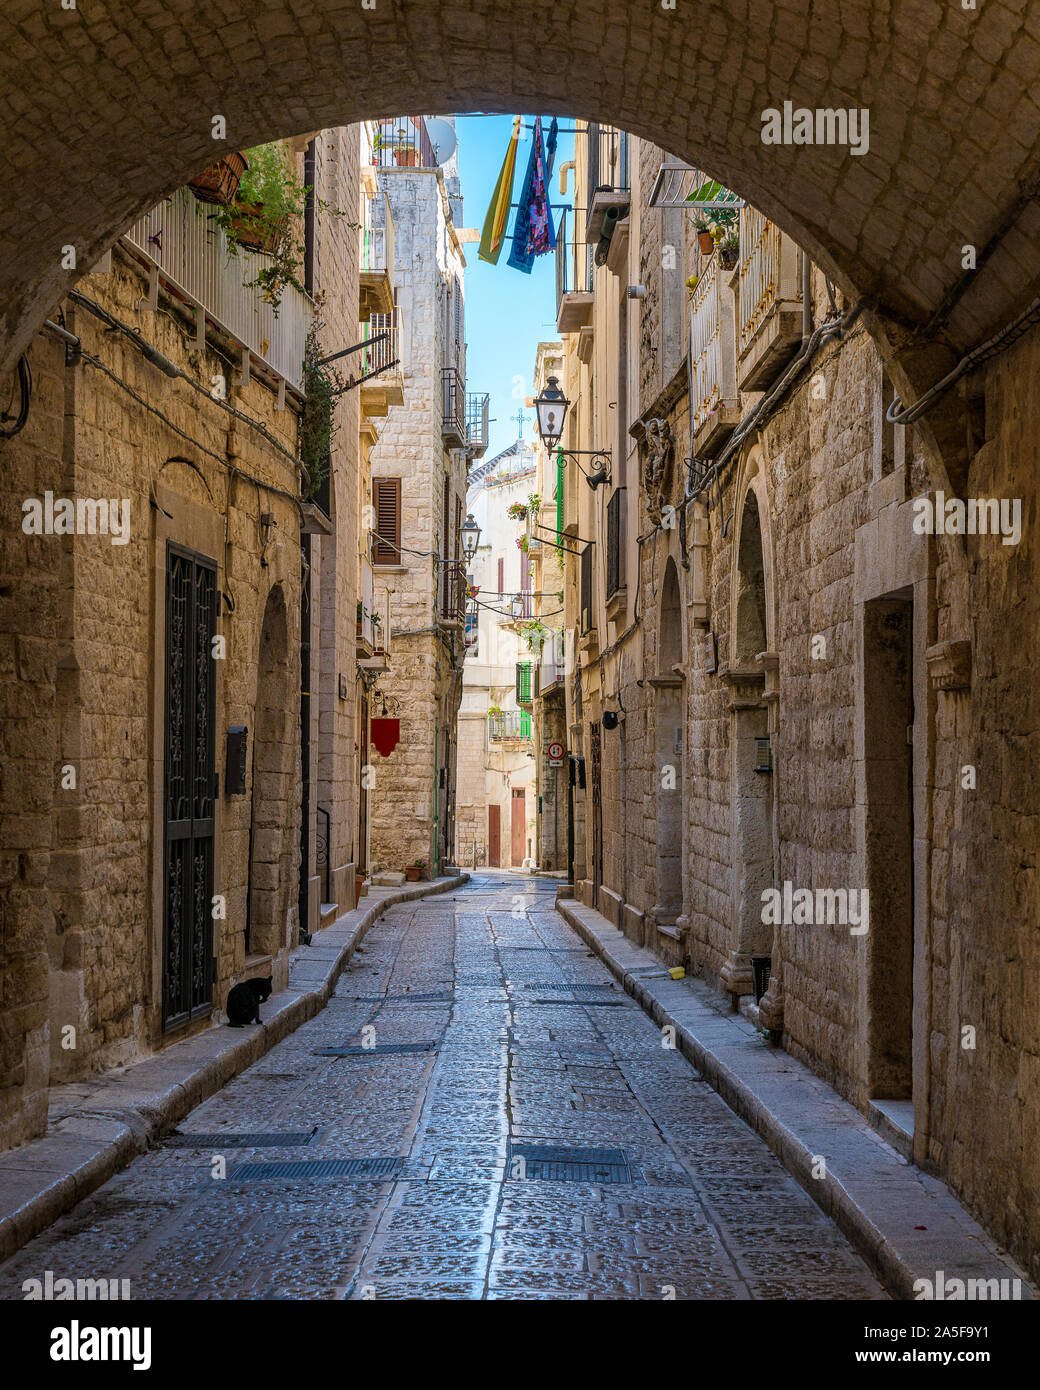 Giovinazzo, cittadina in provincia di Bari, Puglia), il sud dell'Italia. Foto Stock